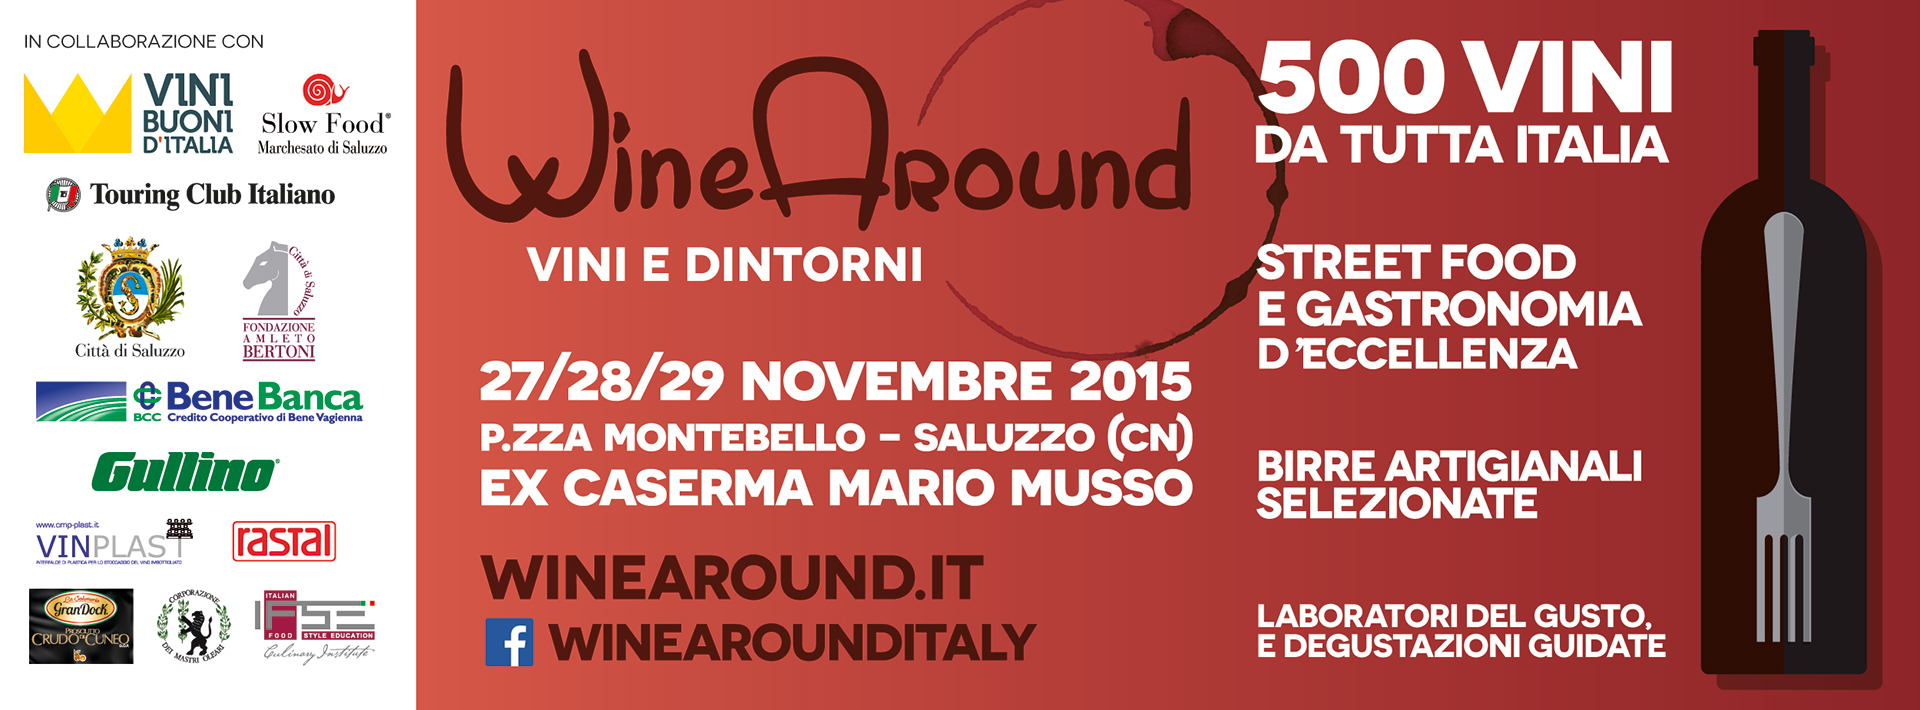 WineAround-vini e dintorni: la seconda edizione a Saluzzo